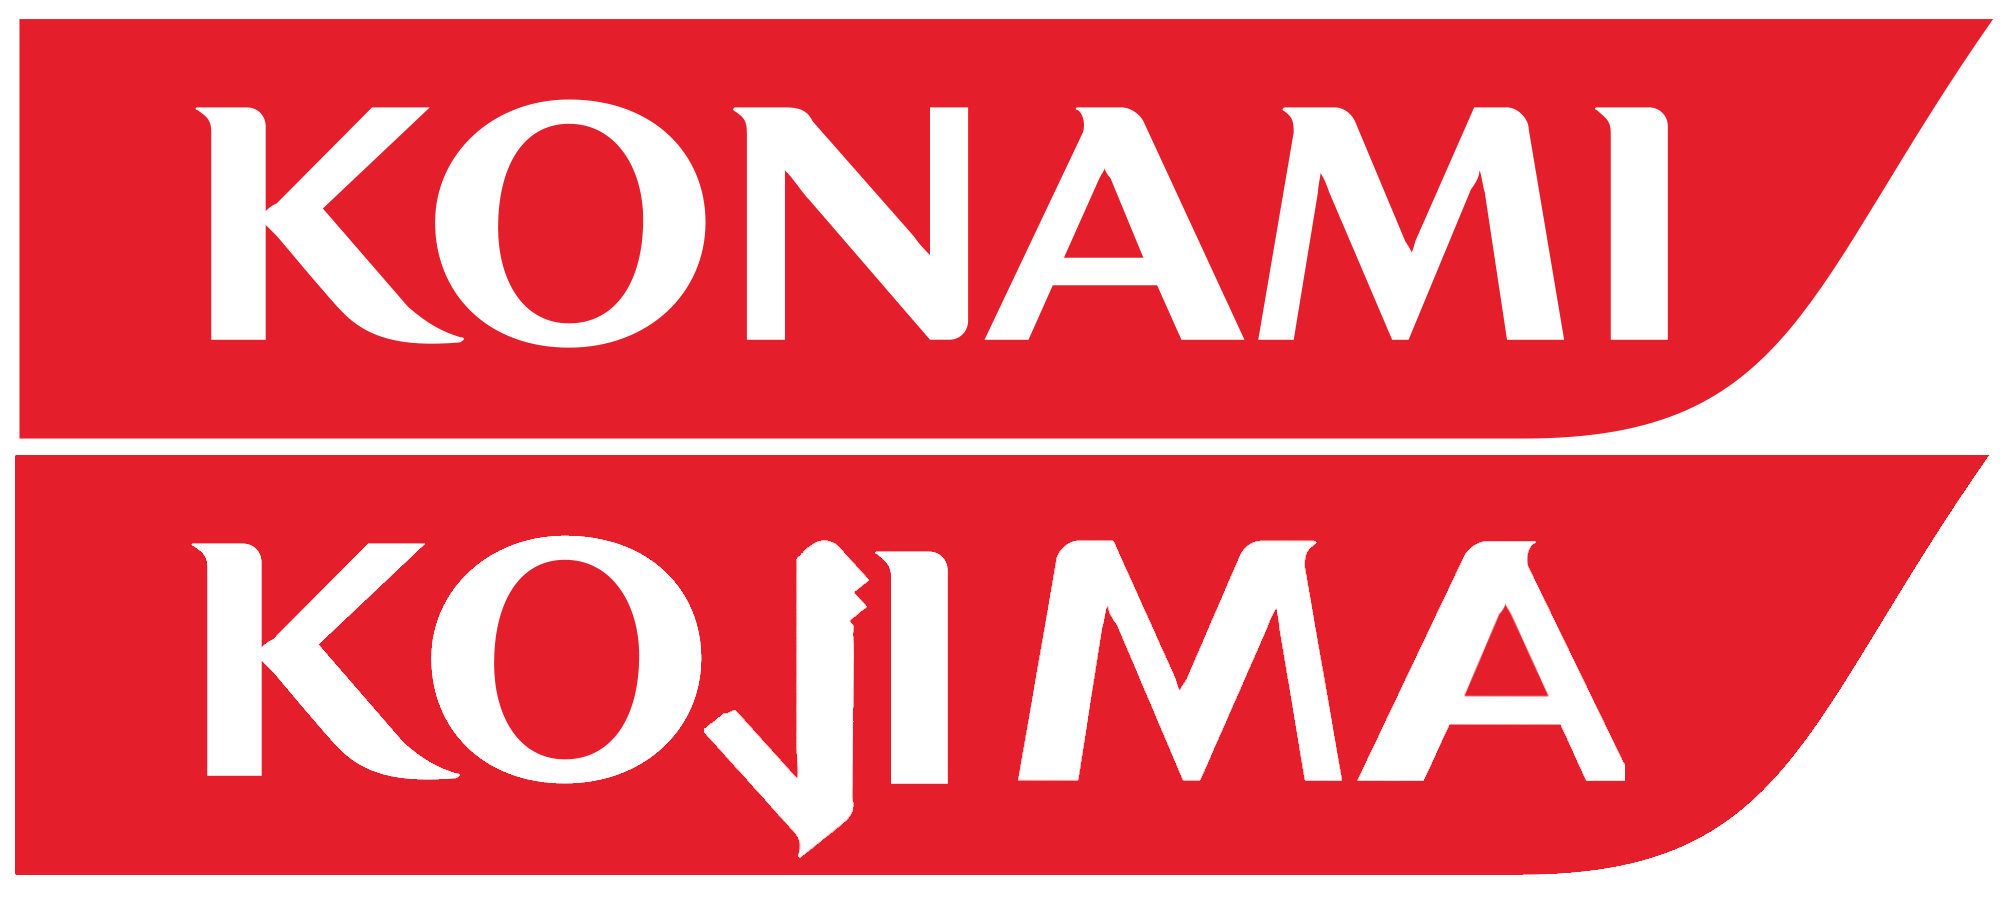 Konami Logo - The New Konami Logo - Album on Imgur